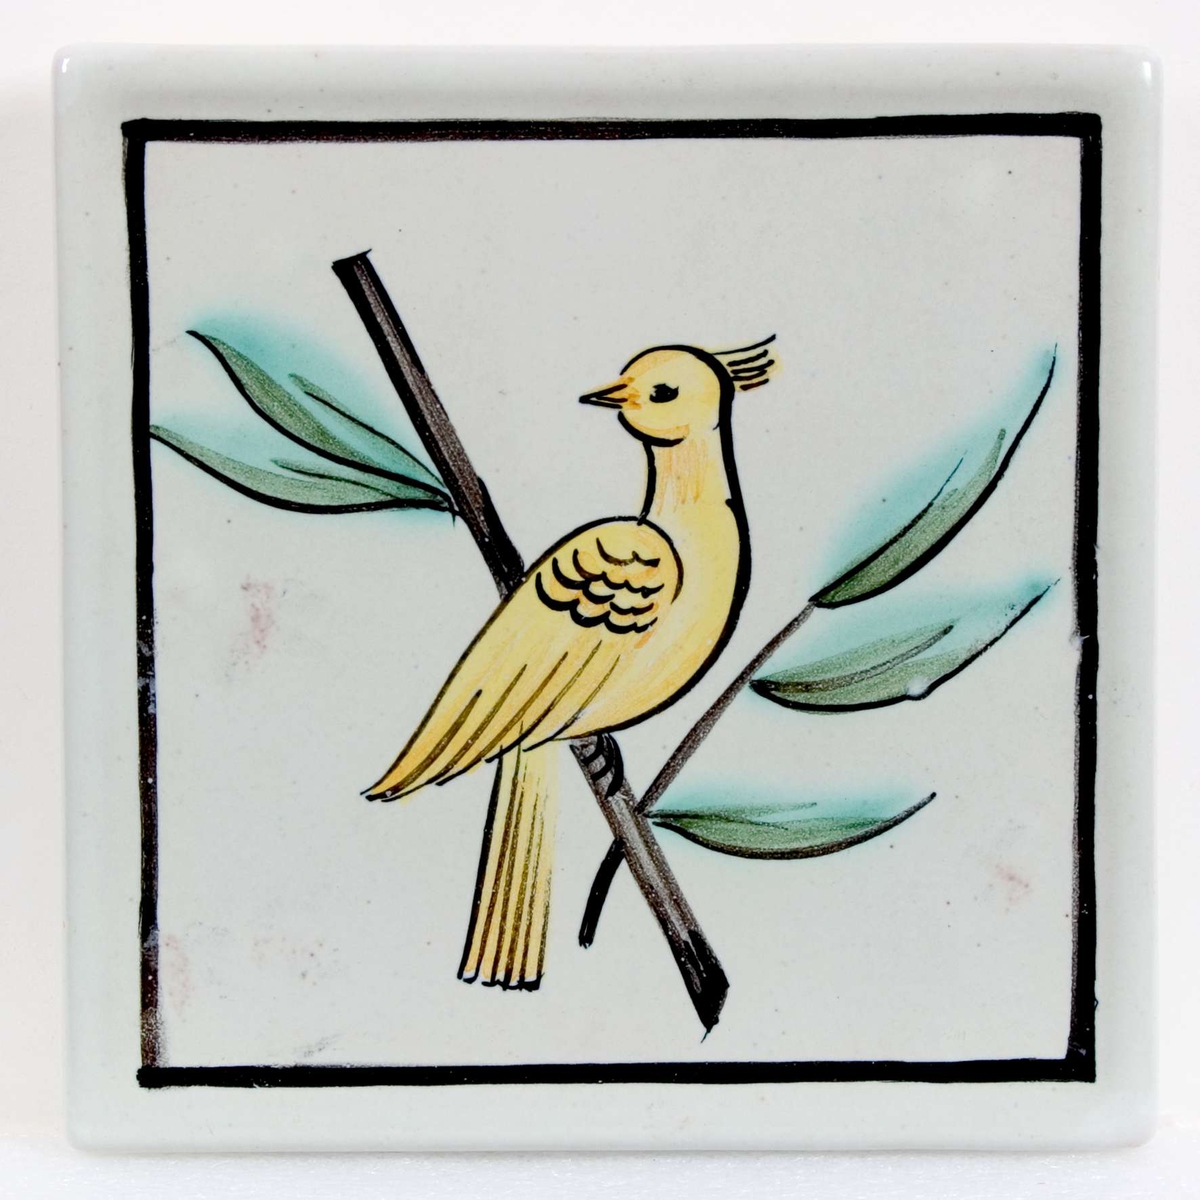 Vitglaserad med målad dekor i gult, svart och grönt föreställande en fågel på en kvist. Stämplad: S:T ERIK UPSALA. Målat i brunt : P 110.

